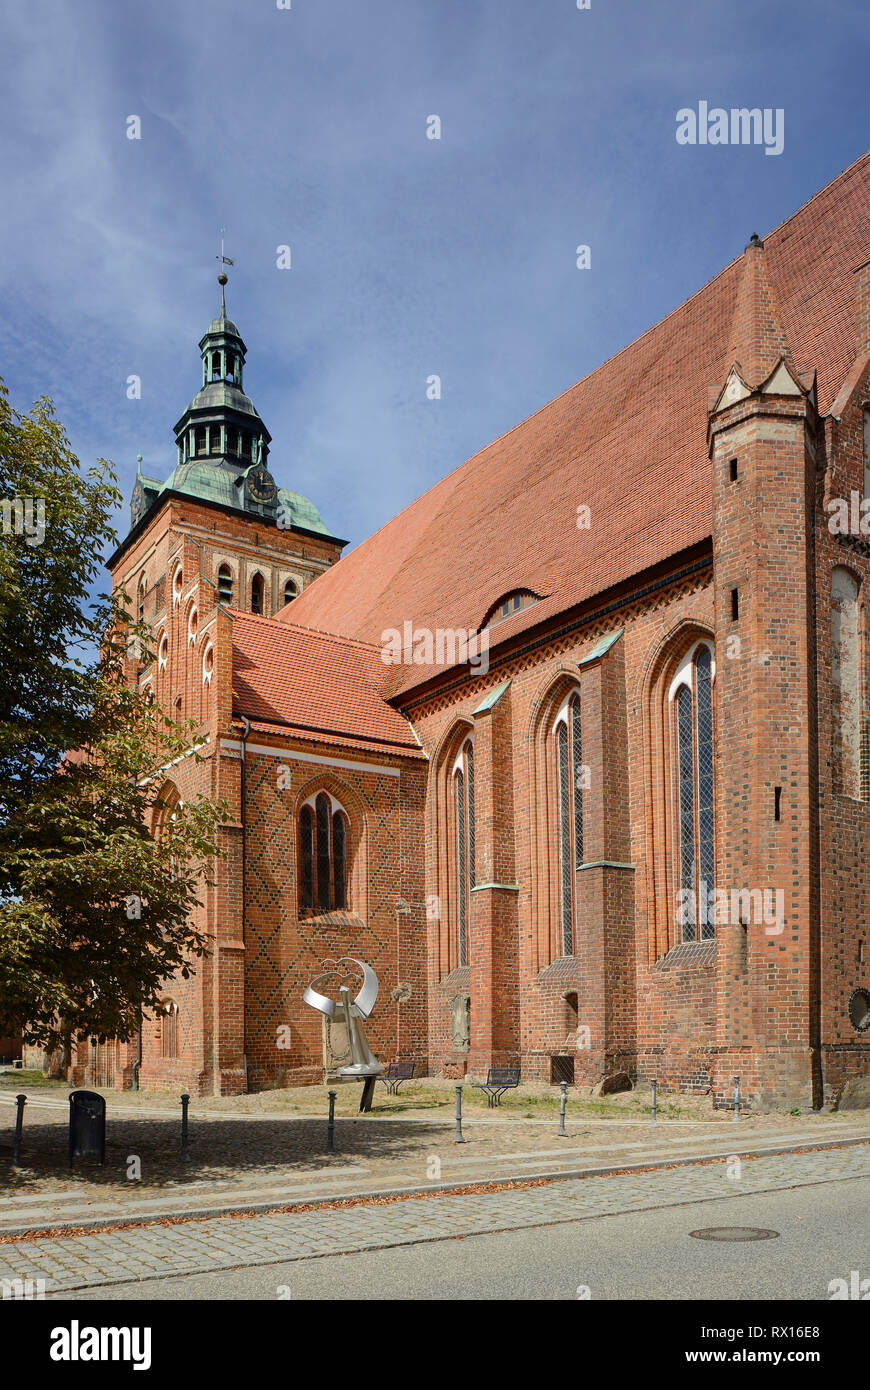 St. Marien Kirche church, Wittstock, Wittstock an der Dosse, Brandenburg, Germany Stock Photo